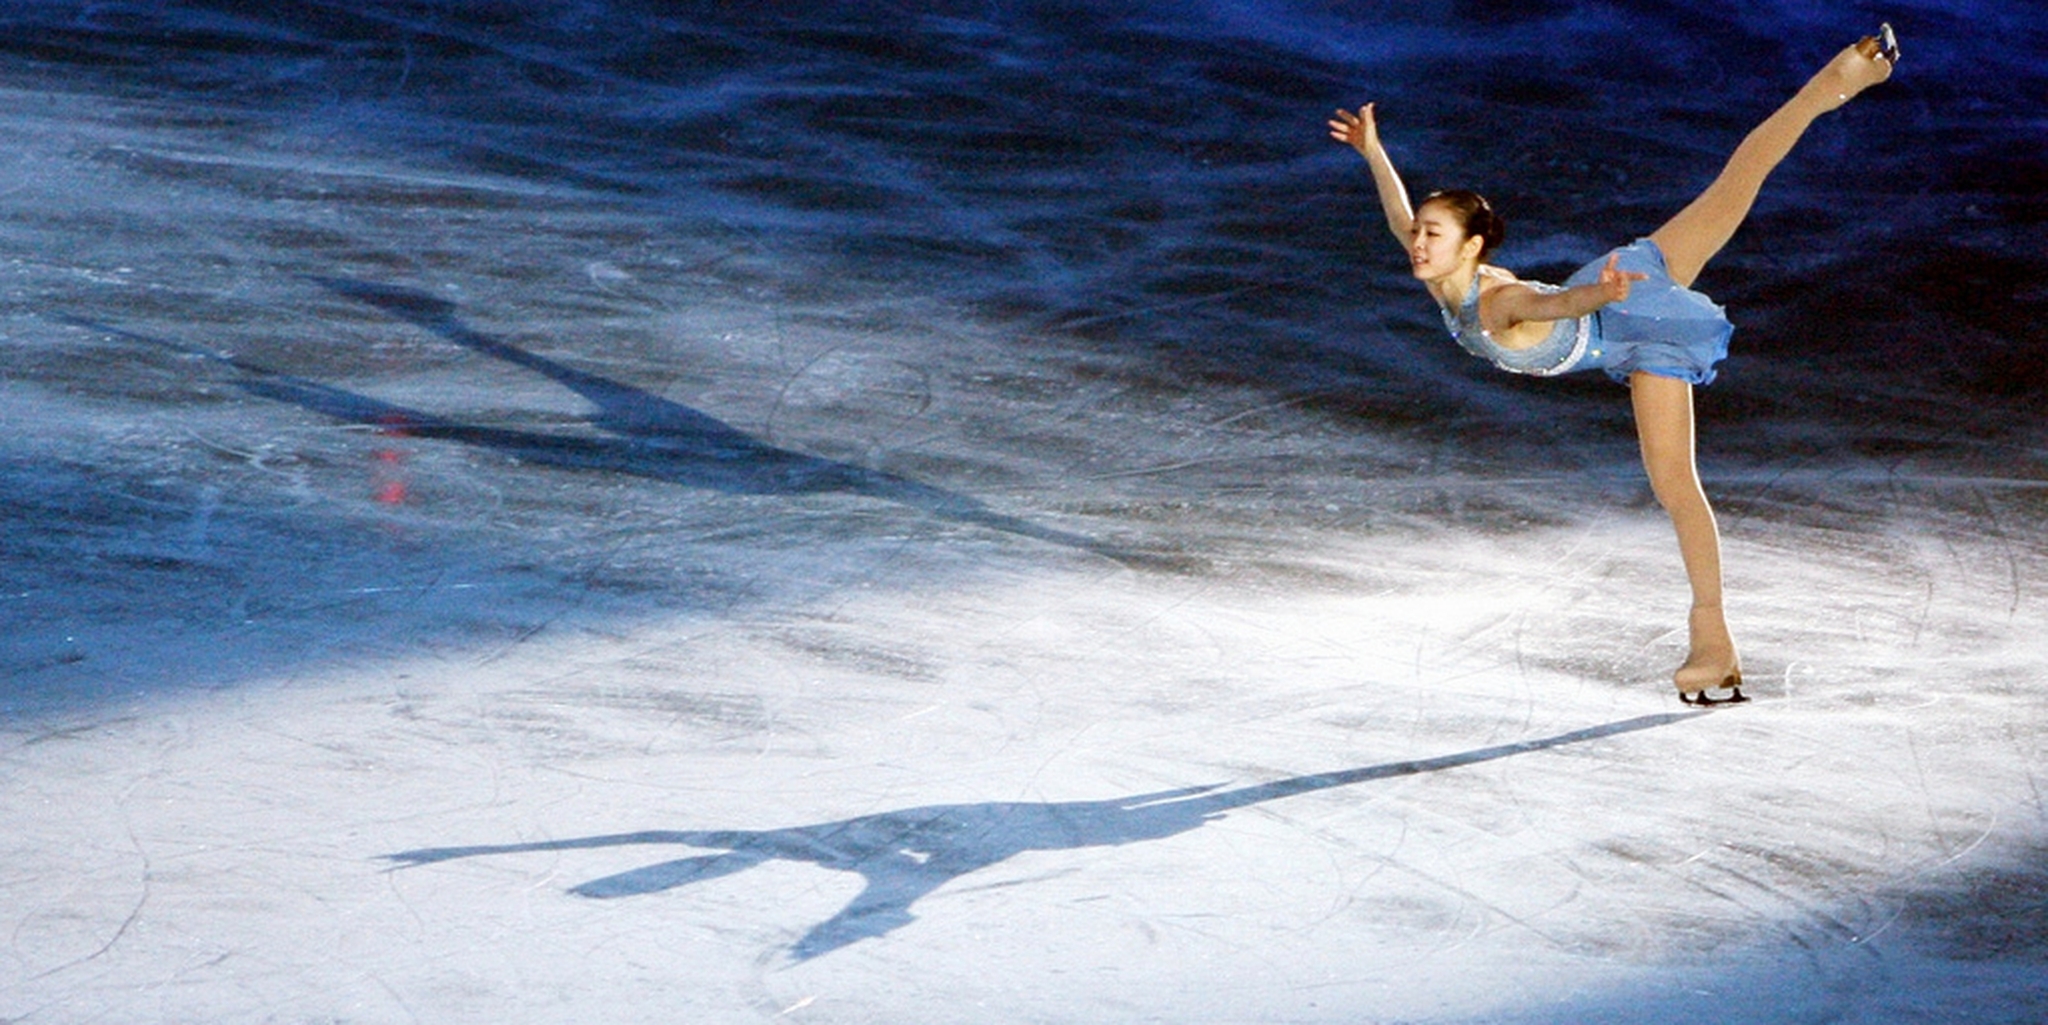 figura de fondo de pantalla,patinaje artístico,figura de skate,patinaje sobre hielo,baile sobre hielo,saltando